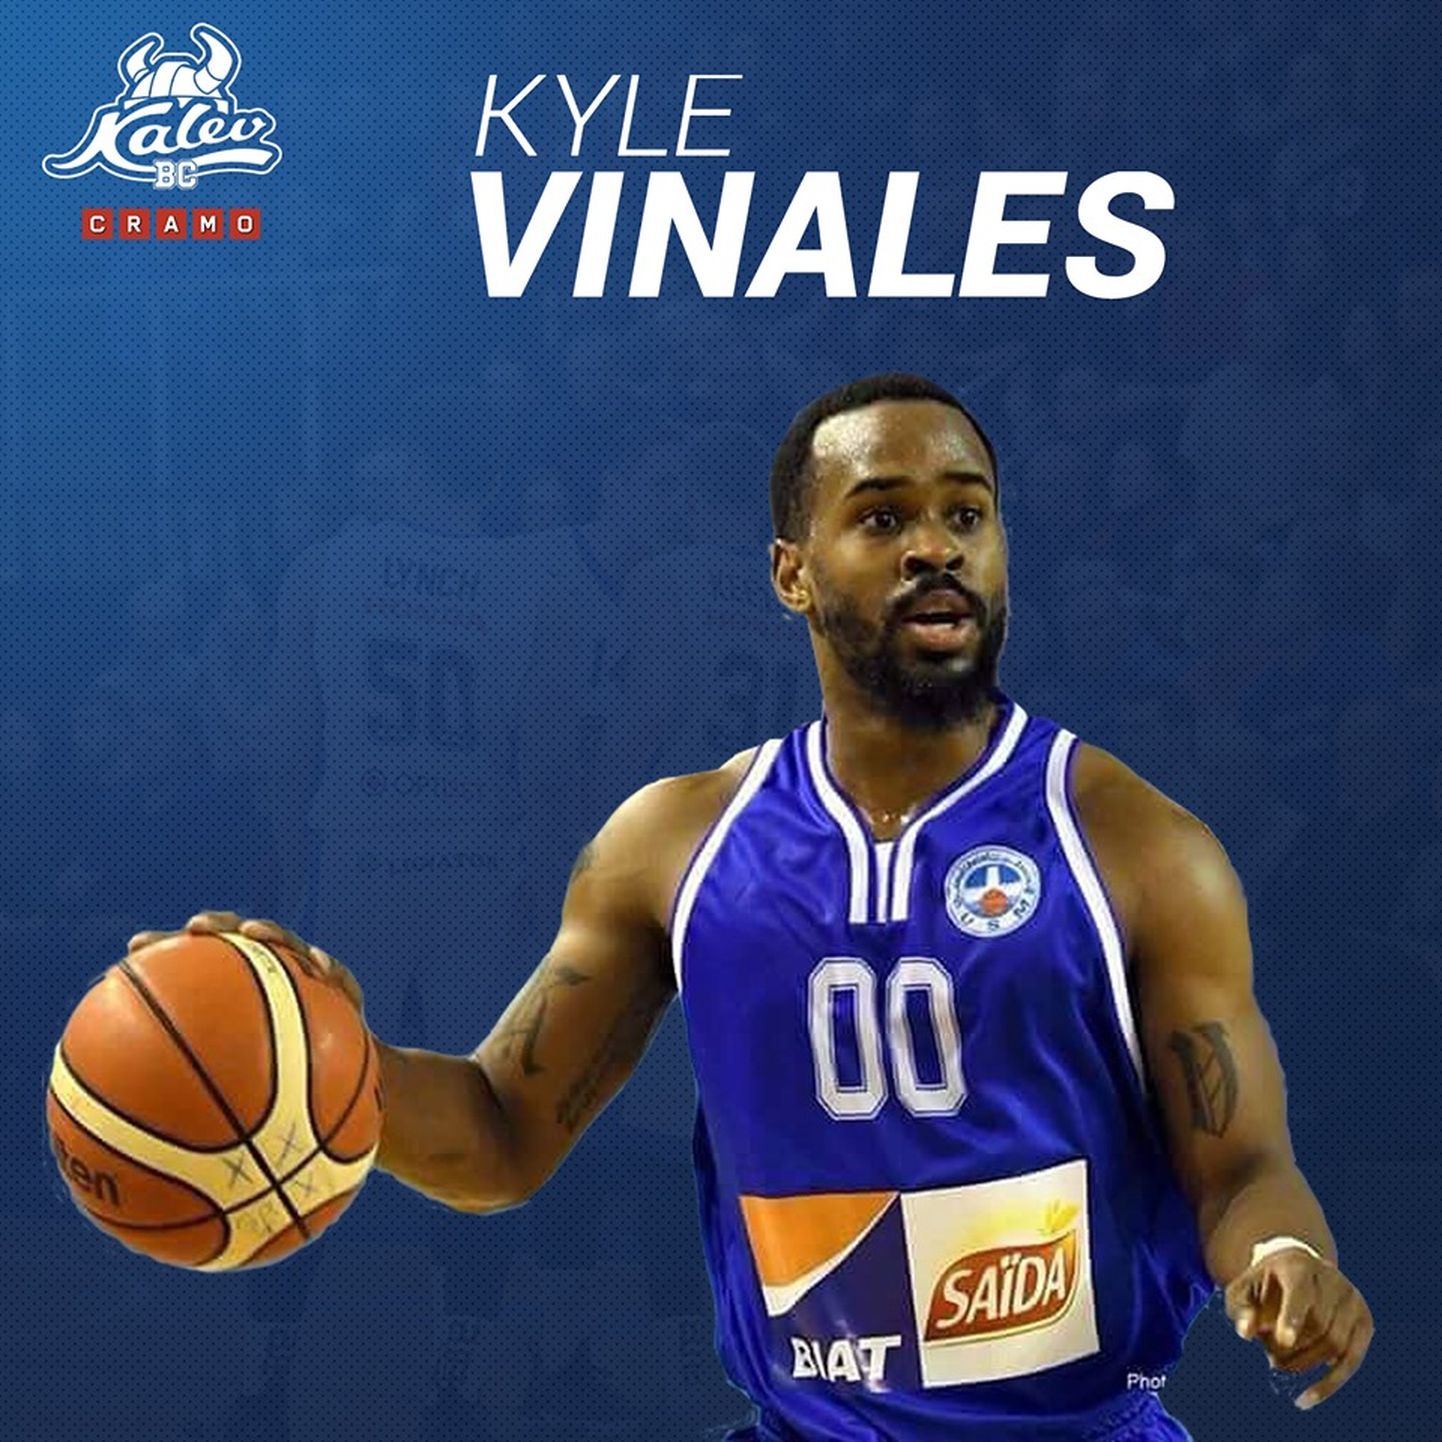 Kyle Vinales